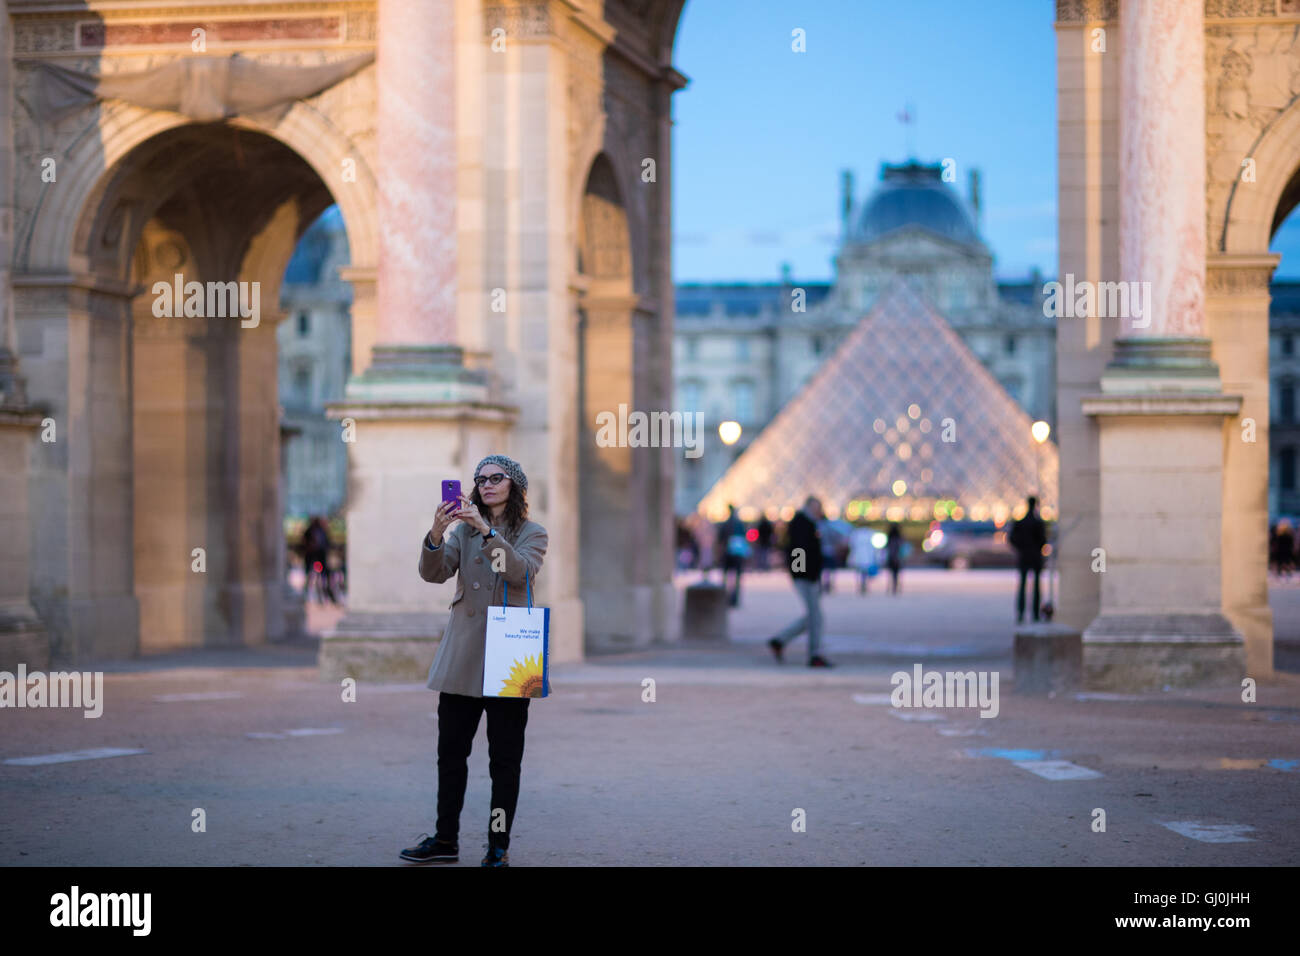 a woman taking a selfie at the Arc de Triomphe du Carrousel & Palais du Louvre at dusk, Paris, France Stock Photo